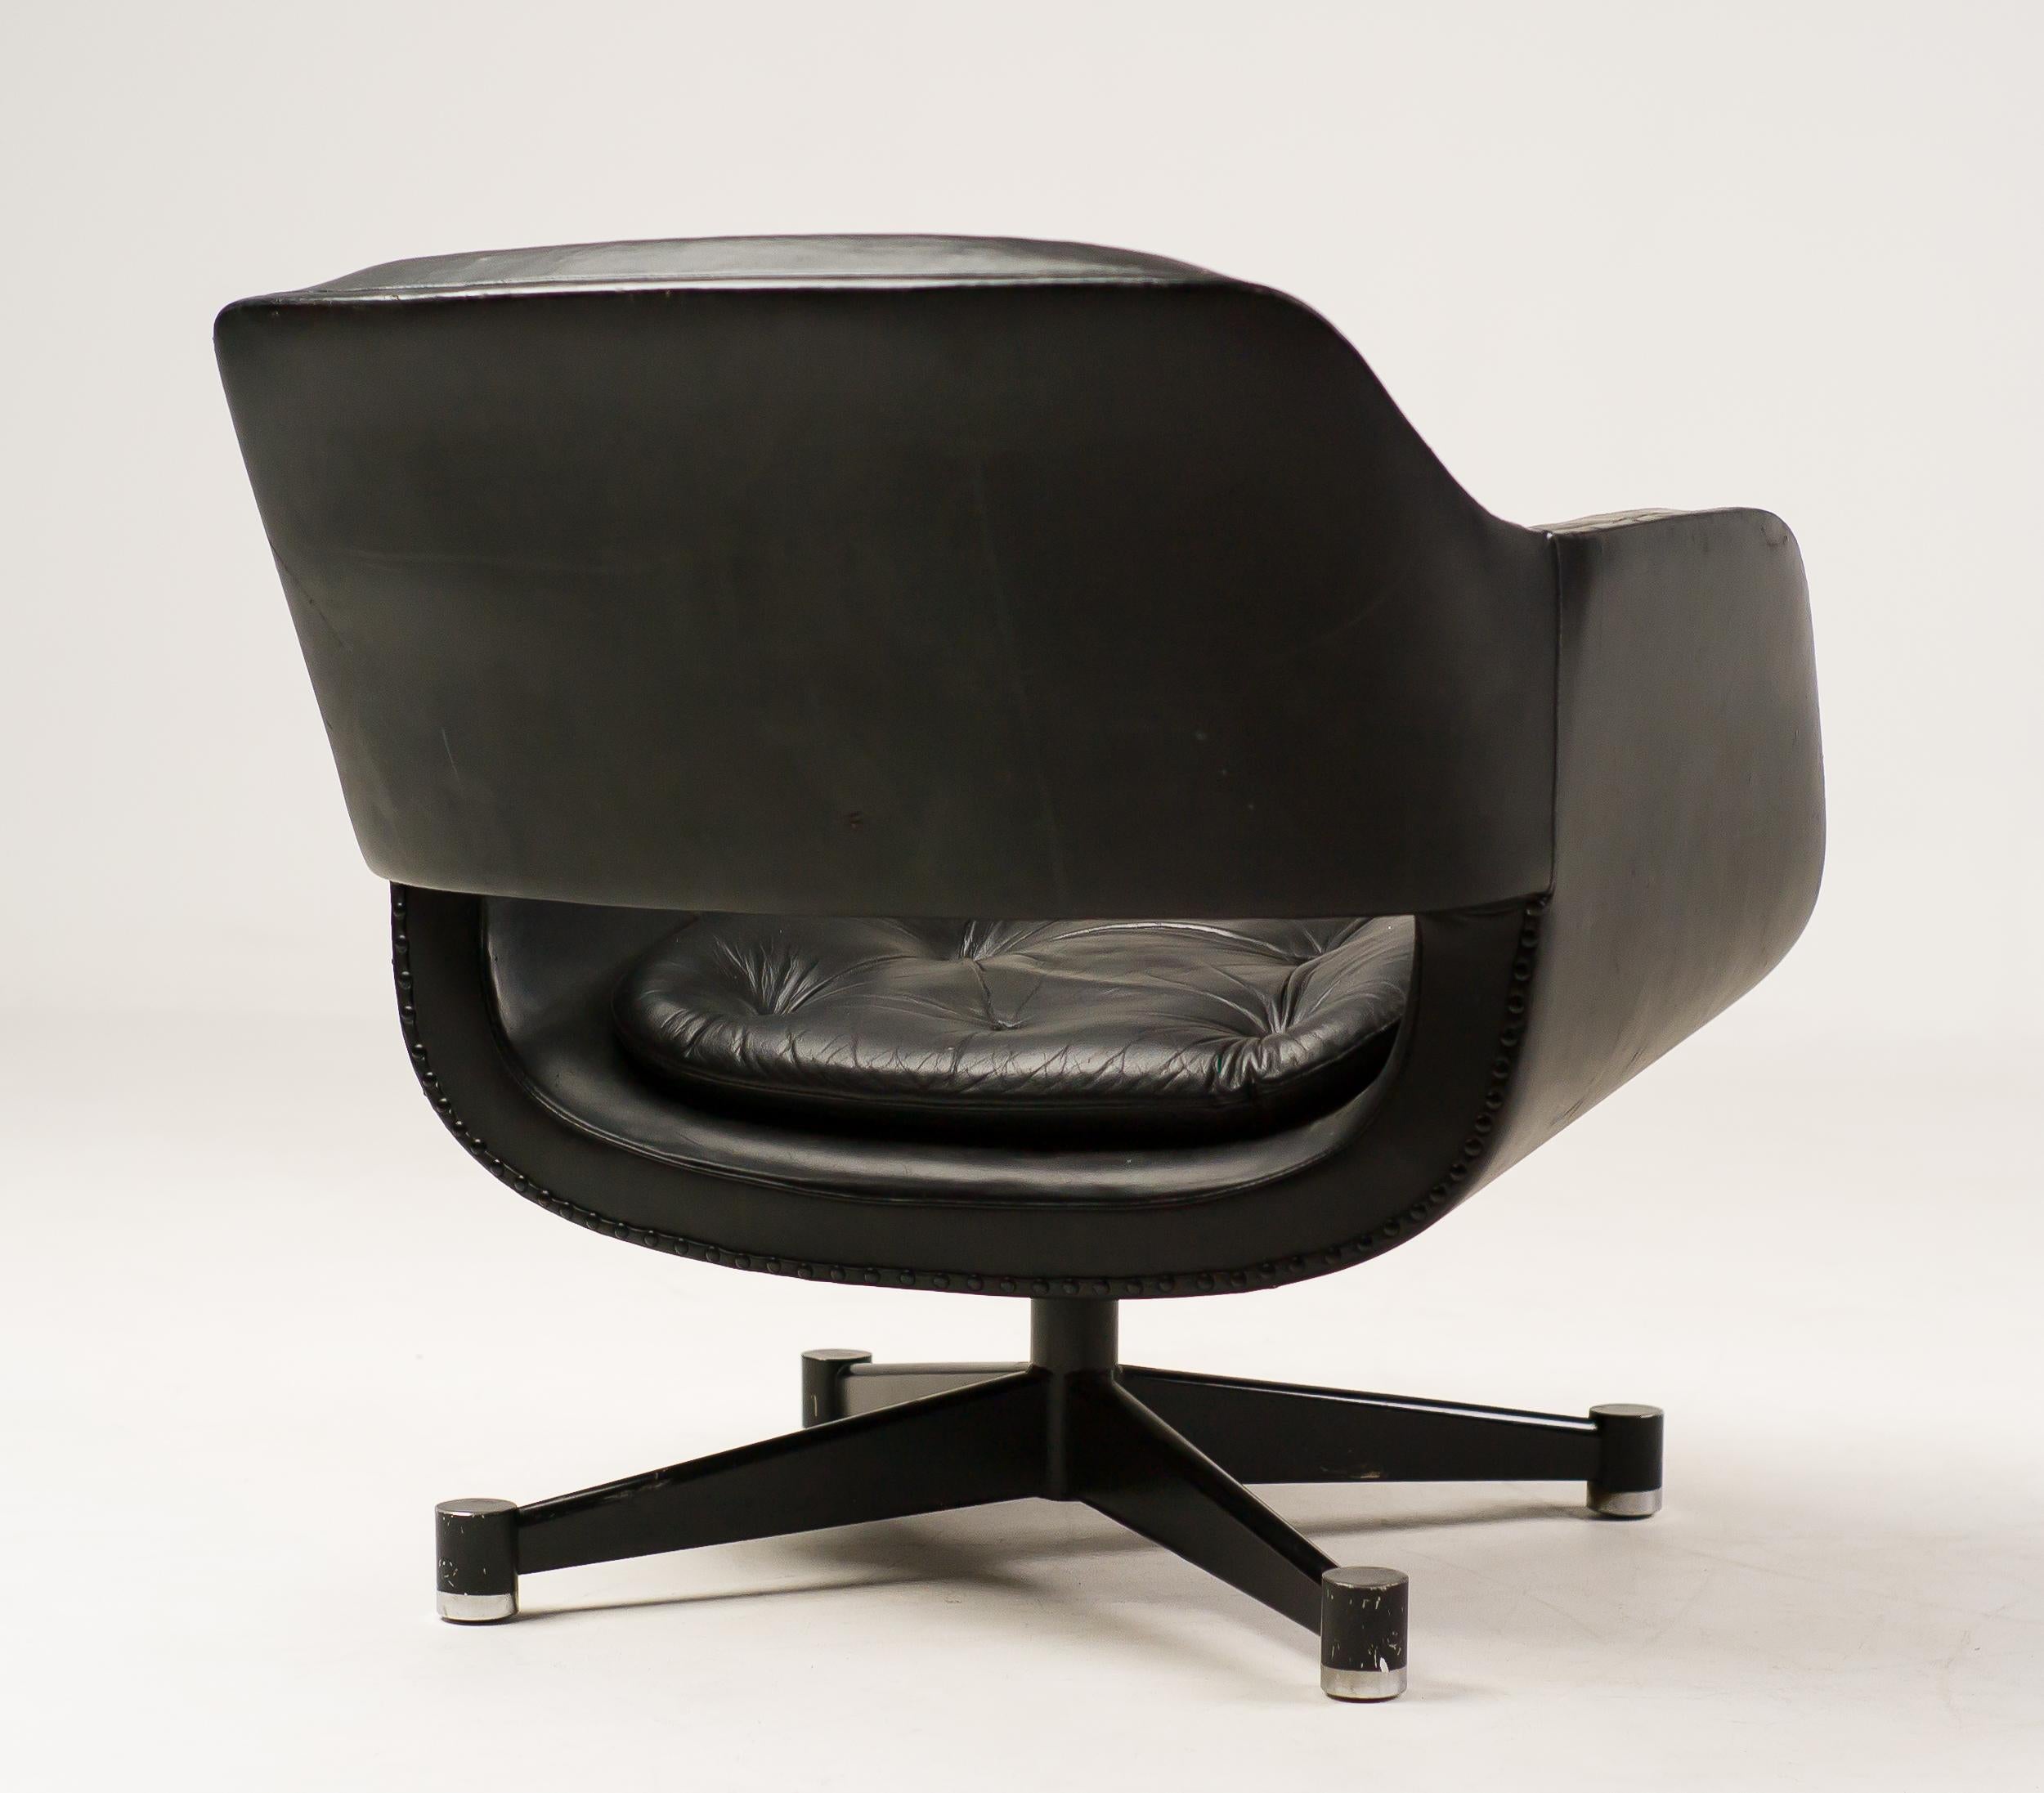 Chaise longue en cuir noir conçue par Olli Mannermaa pour Finnart Ab.
Rare et très confortable fauteuil pivotant en état vintage d'origine.
Le cuir est en bon état, les bras présentent des usures mais pas de fissures.

Olli Mannermaa est le